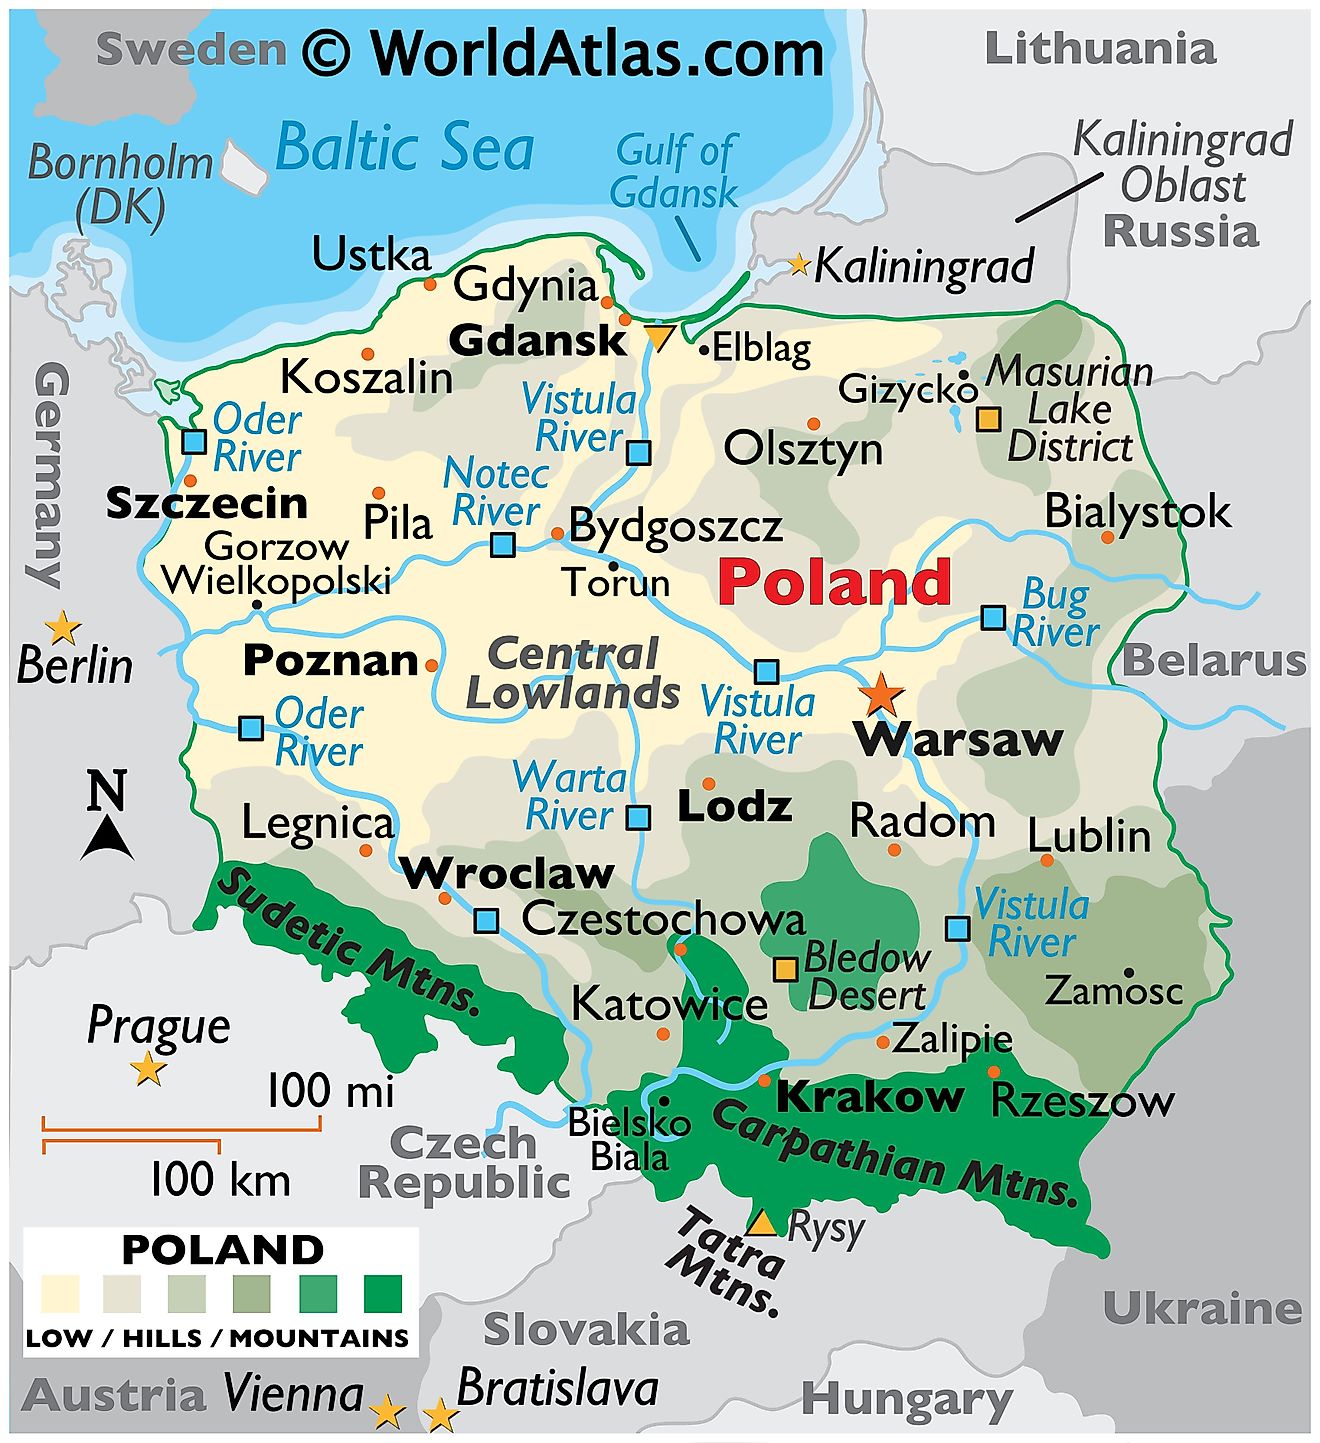 Mapa físico de Polonia que muestra el relieve, las fronteras internacionales, los ríos principales, las cadenas montañosas, los puntos extremos, las ciudades importantes, etc.